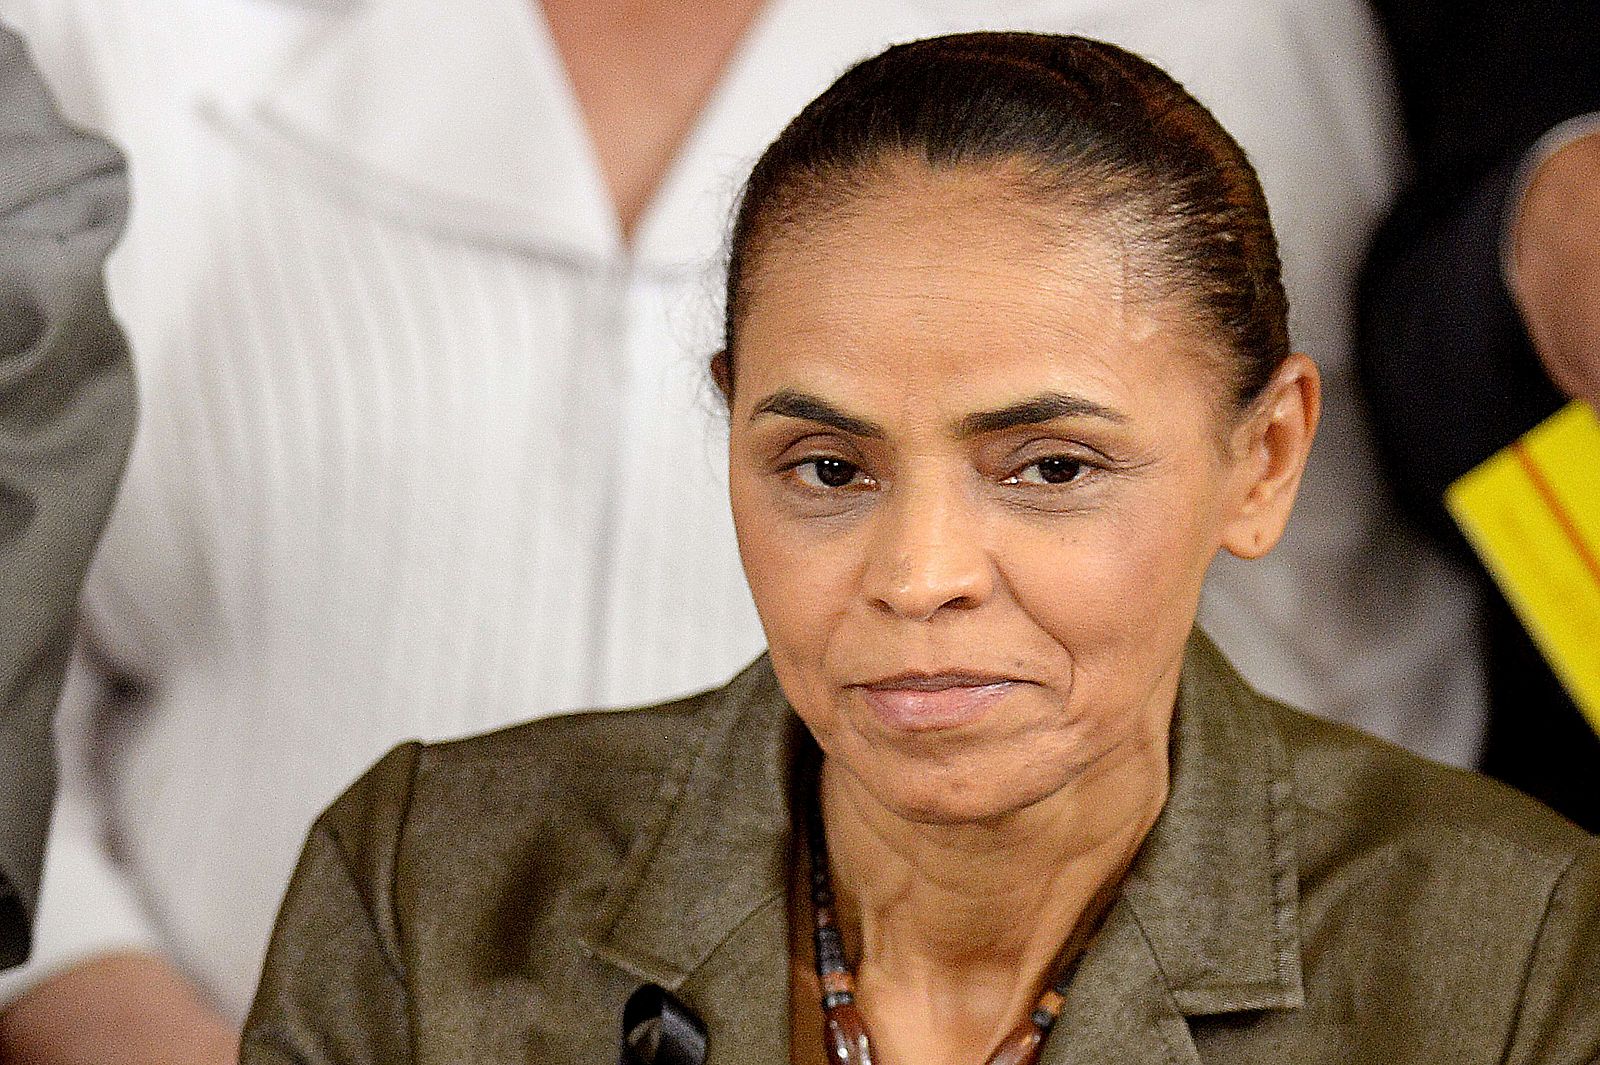 La ecologista Martina Silva será la nueva candidata a la presidencia de los socialistas de brasil tras la muerte del anterior cnadidato en un accidente aéreo.